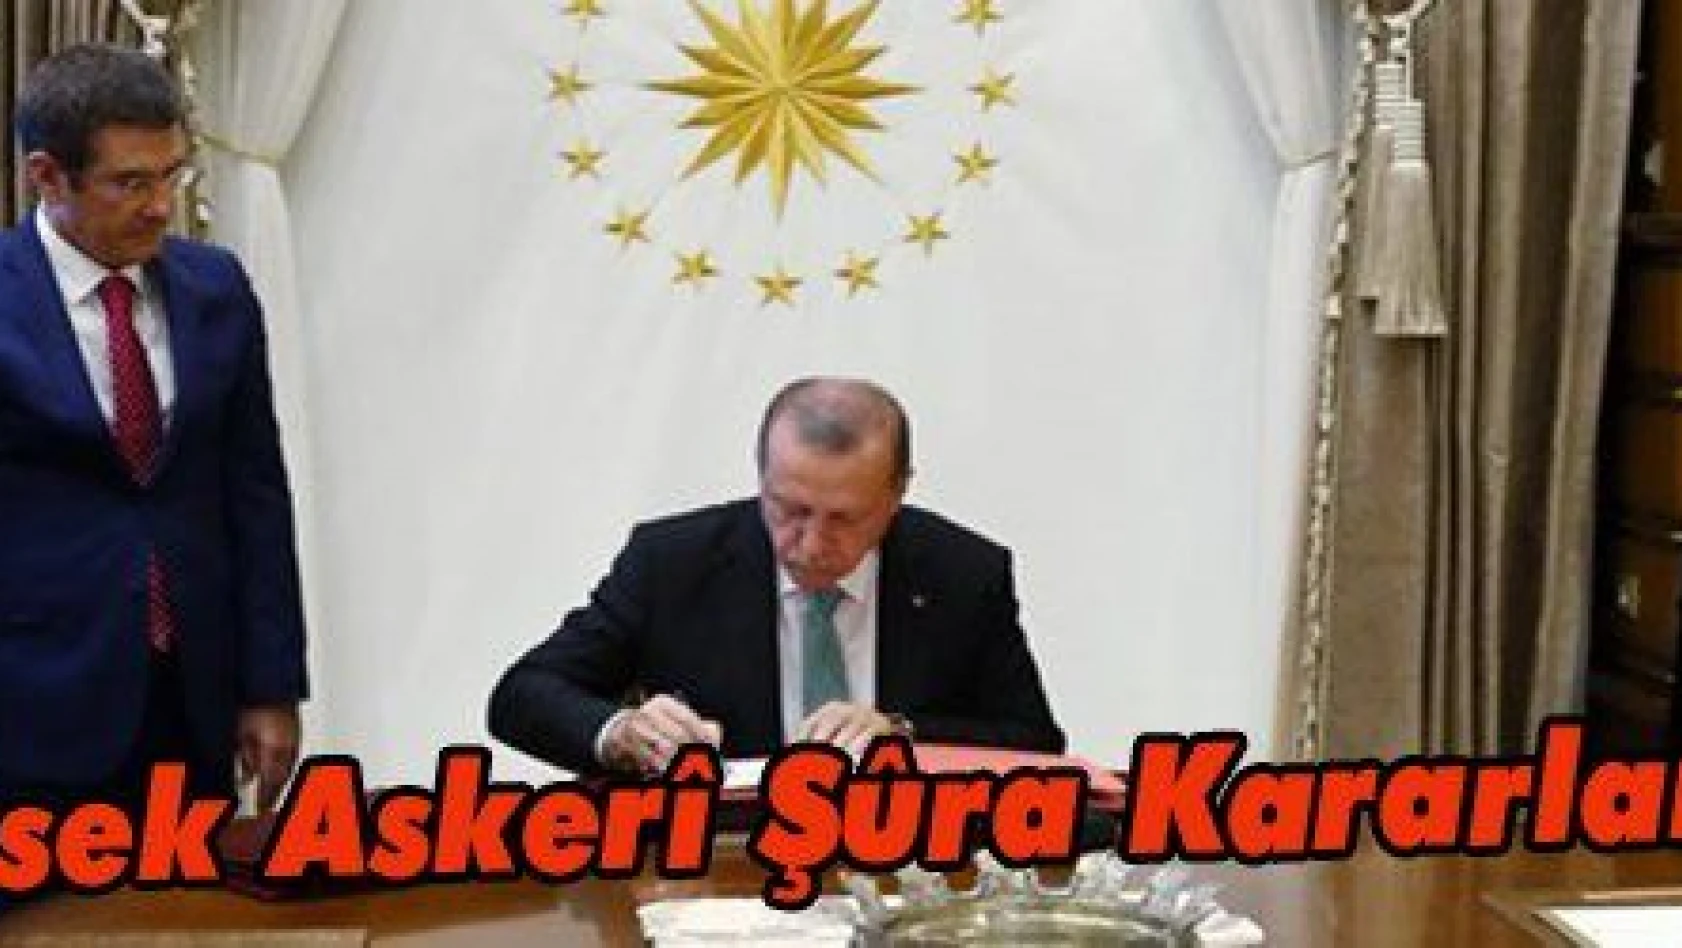 Erdoğan, Yüksek Askerî Şûra Kararlarını Onayladı